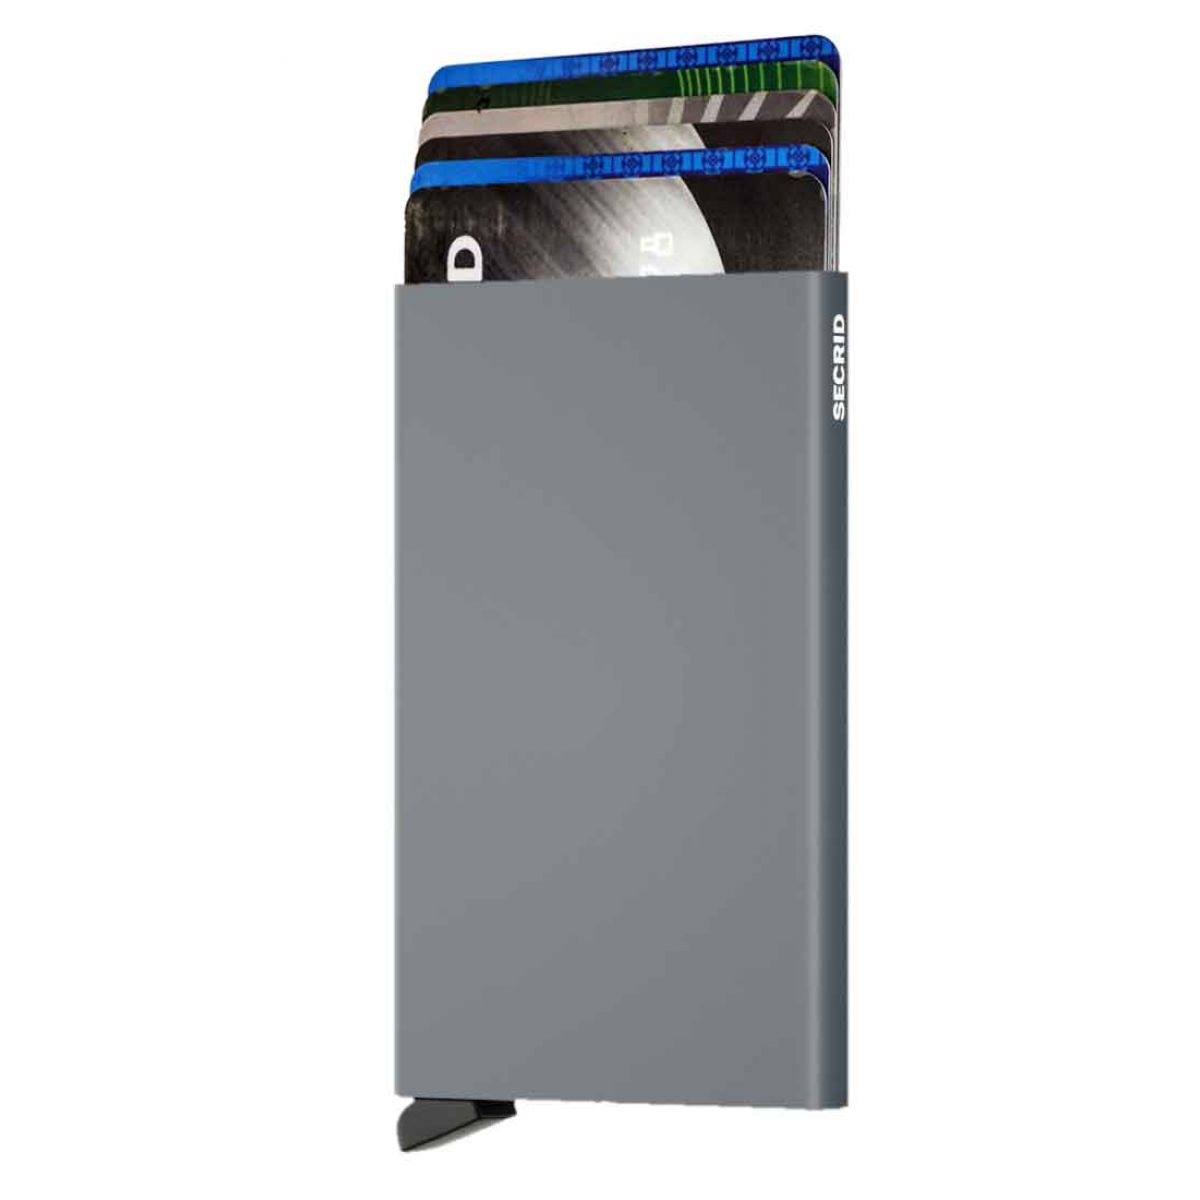 Secrid card protector in color titanium- SECRID - EAN- 8718215280040